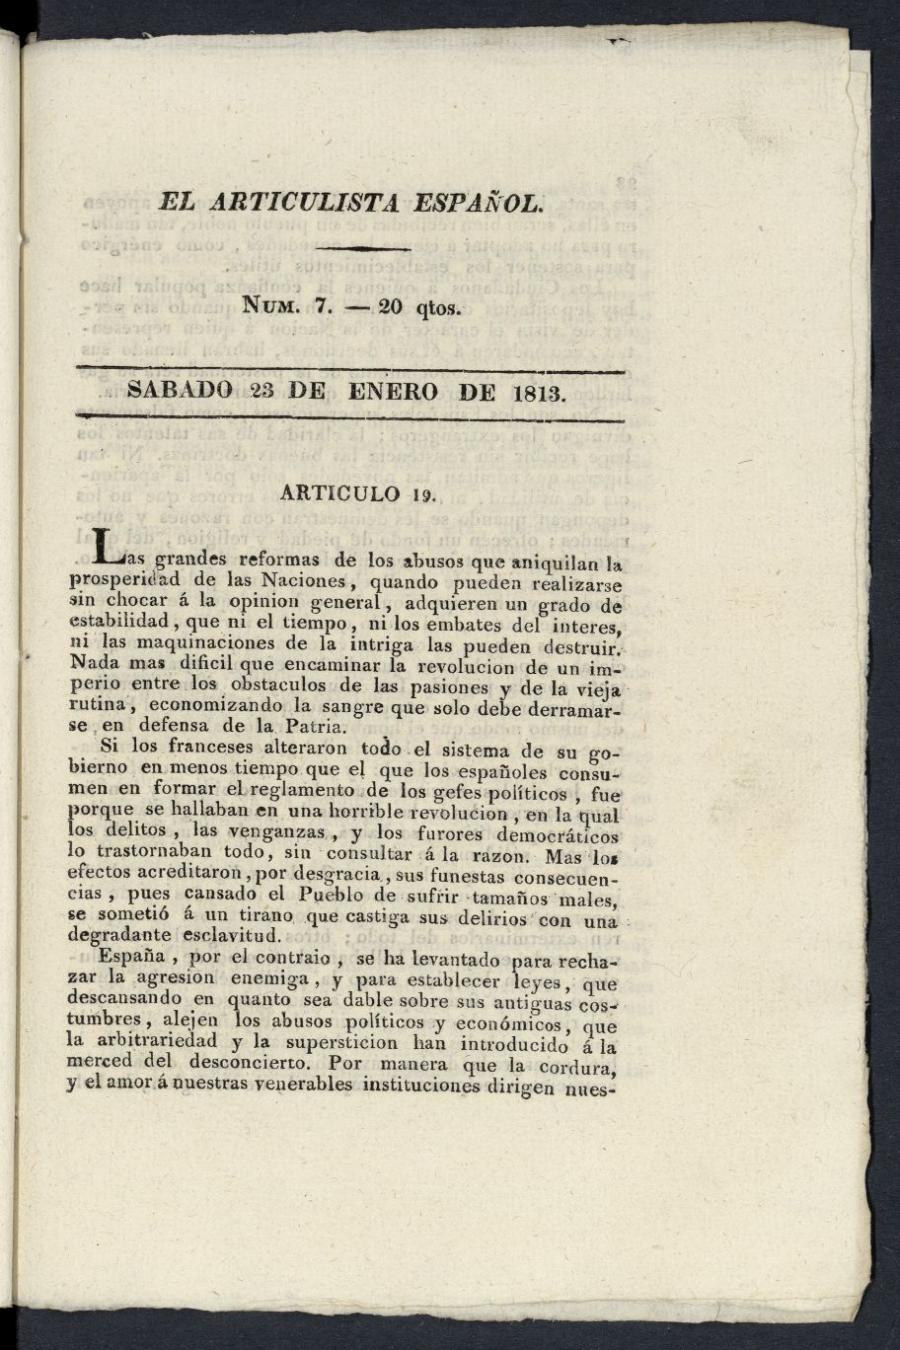 El Articulista Espaol, sbado 23 de enero de 1813